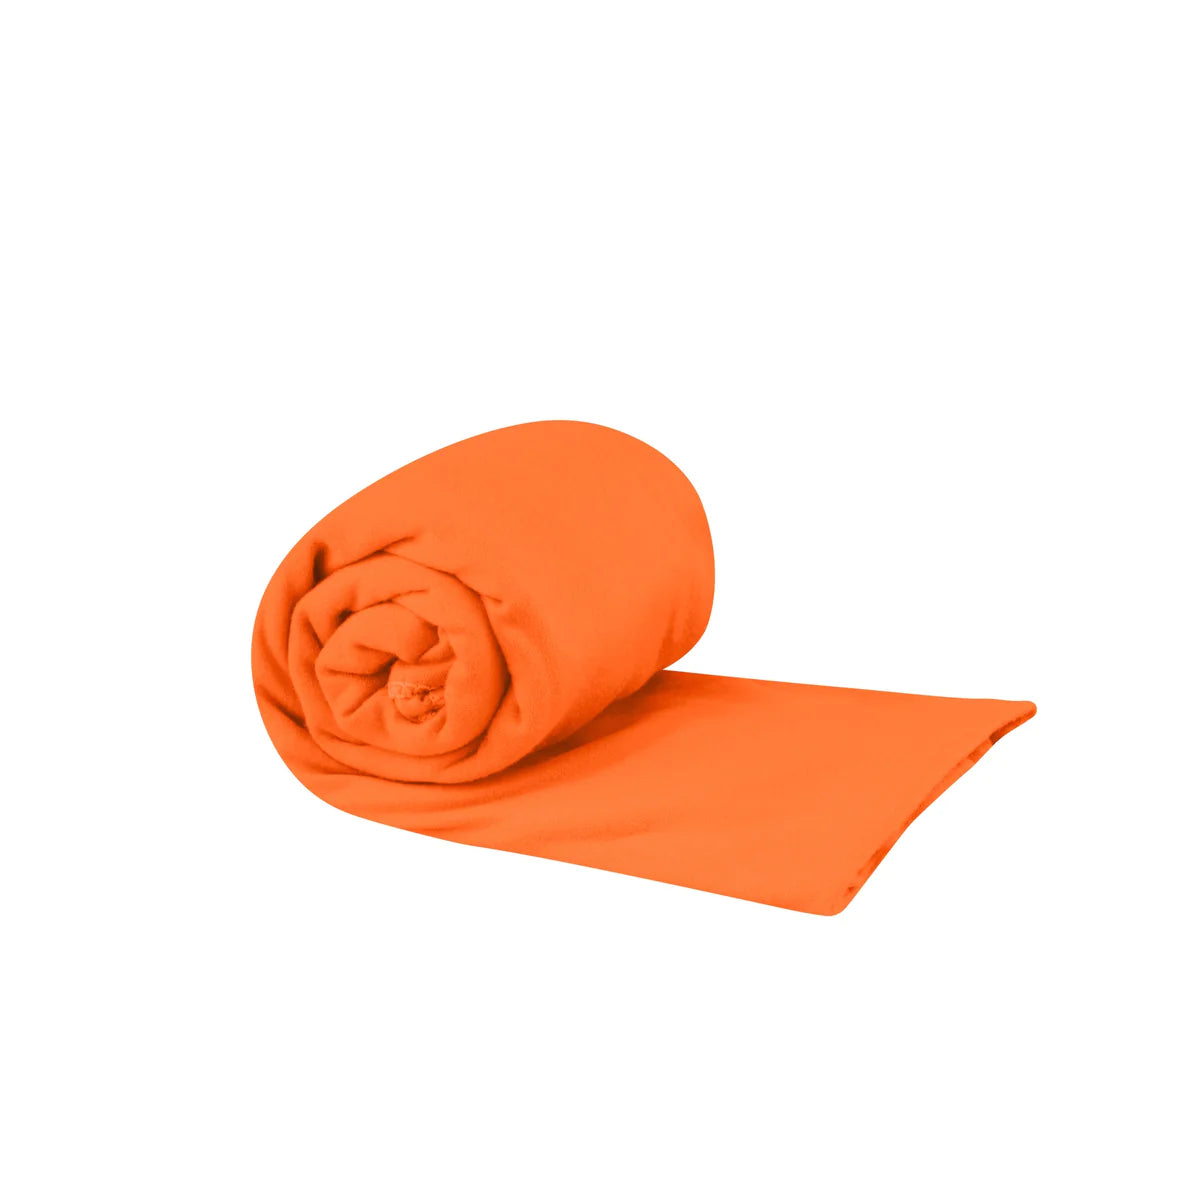 Sea to Summit - Pocket Towel Medium - Outback Orange